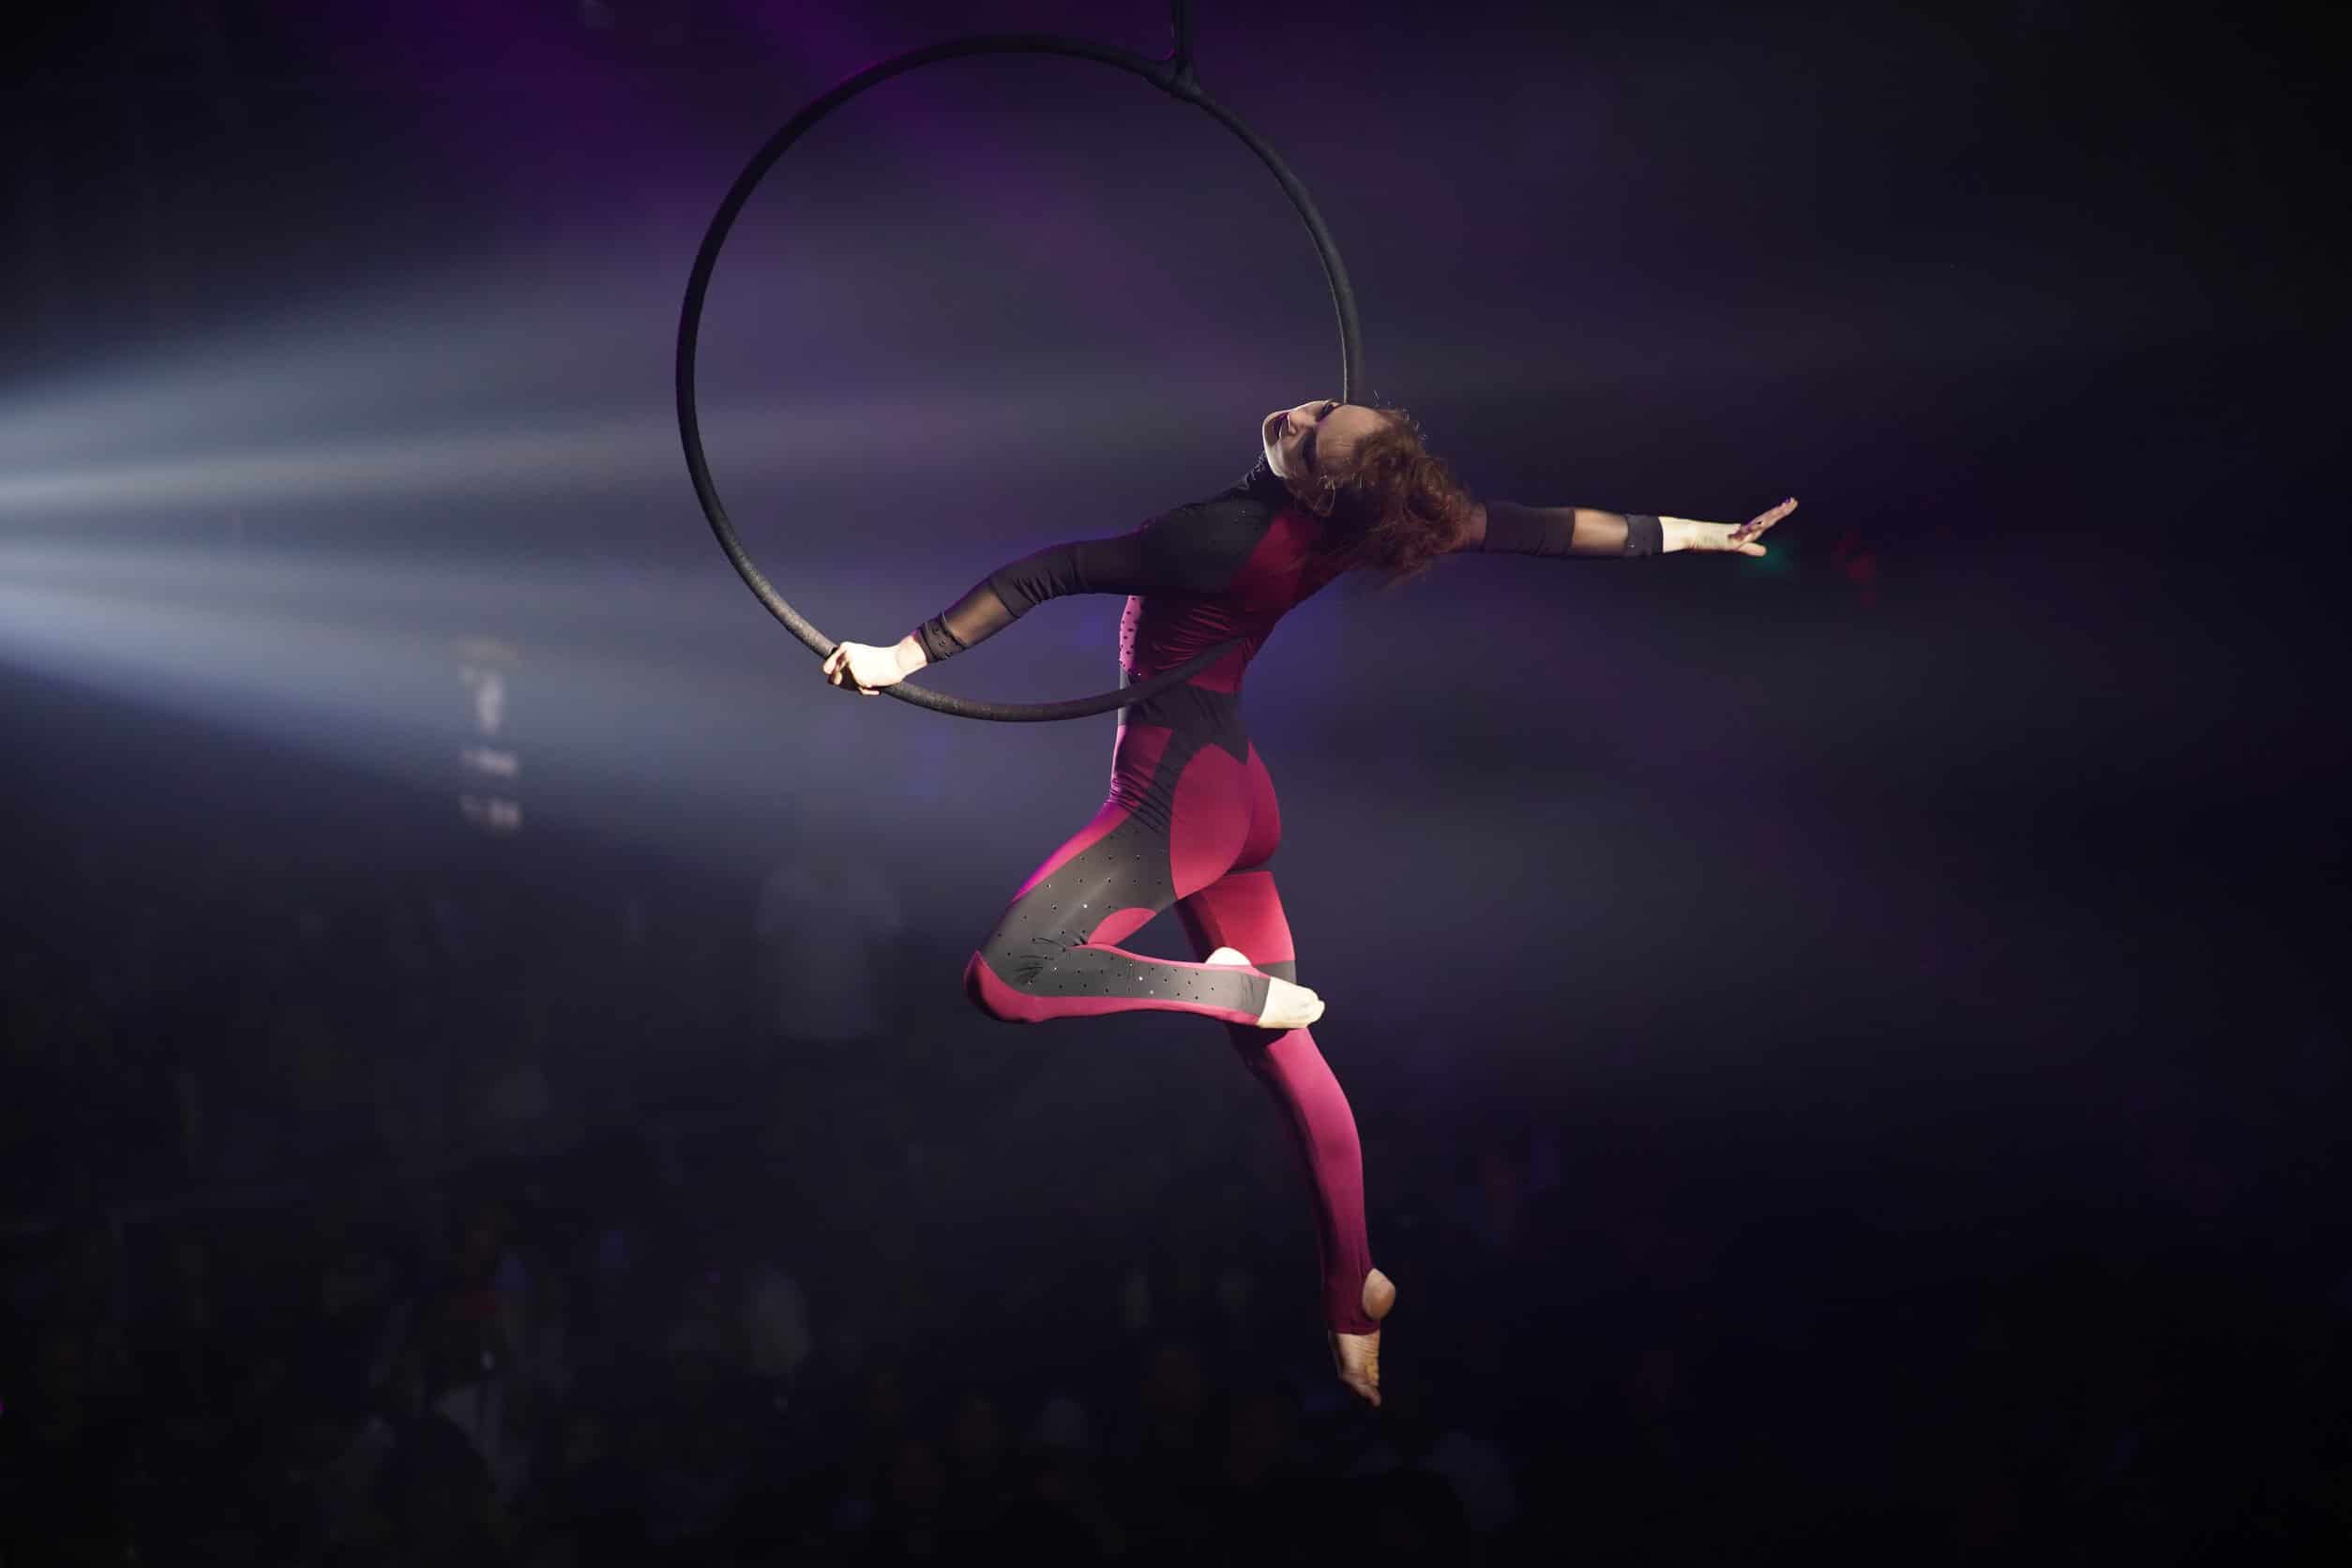 Aerial Hoop Acrobatic Performance at Aaron Bessant Park